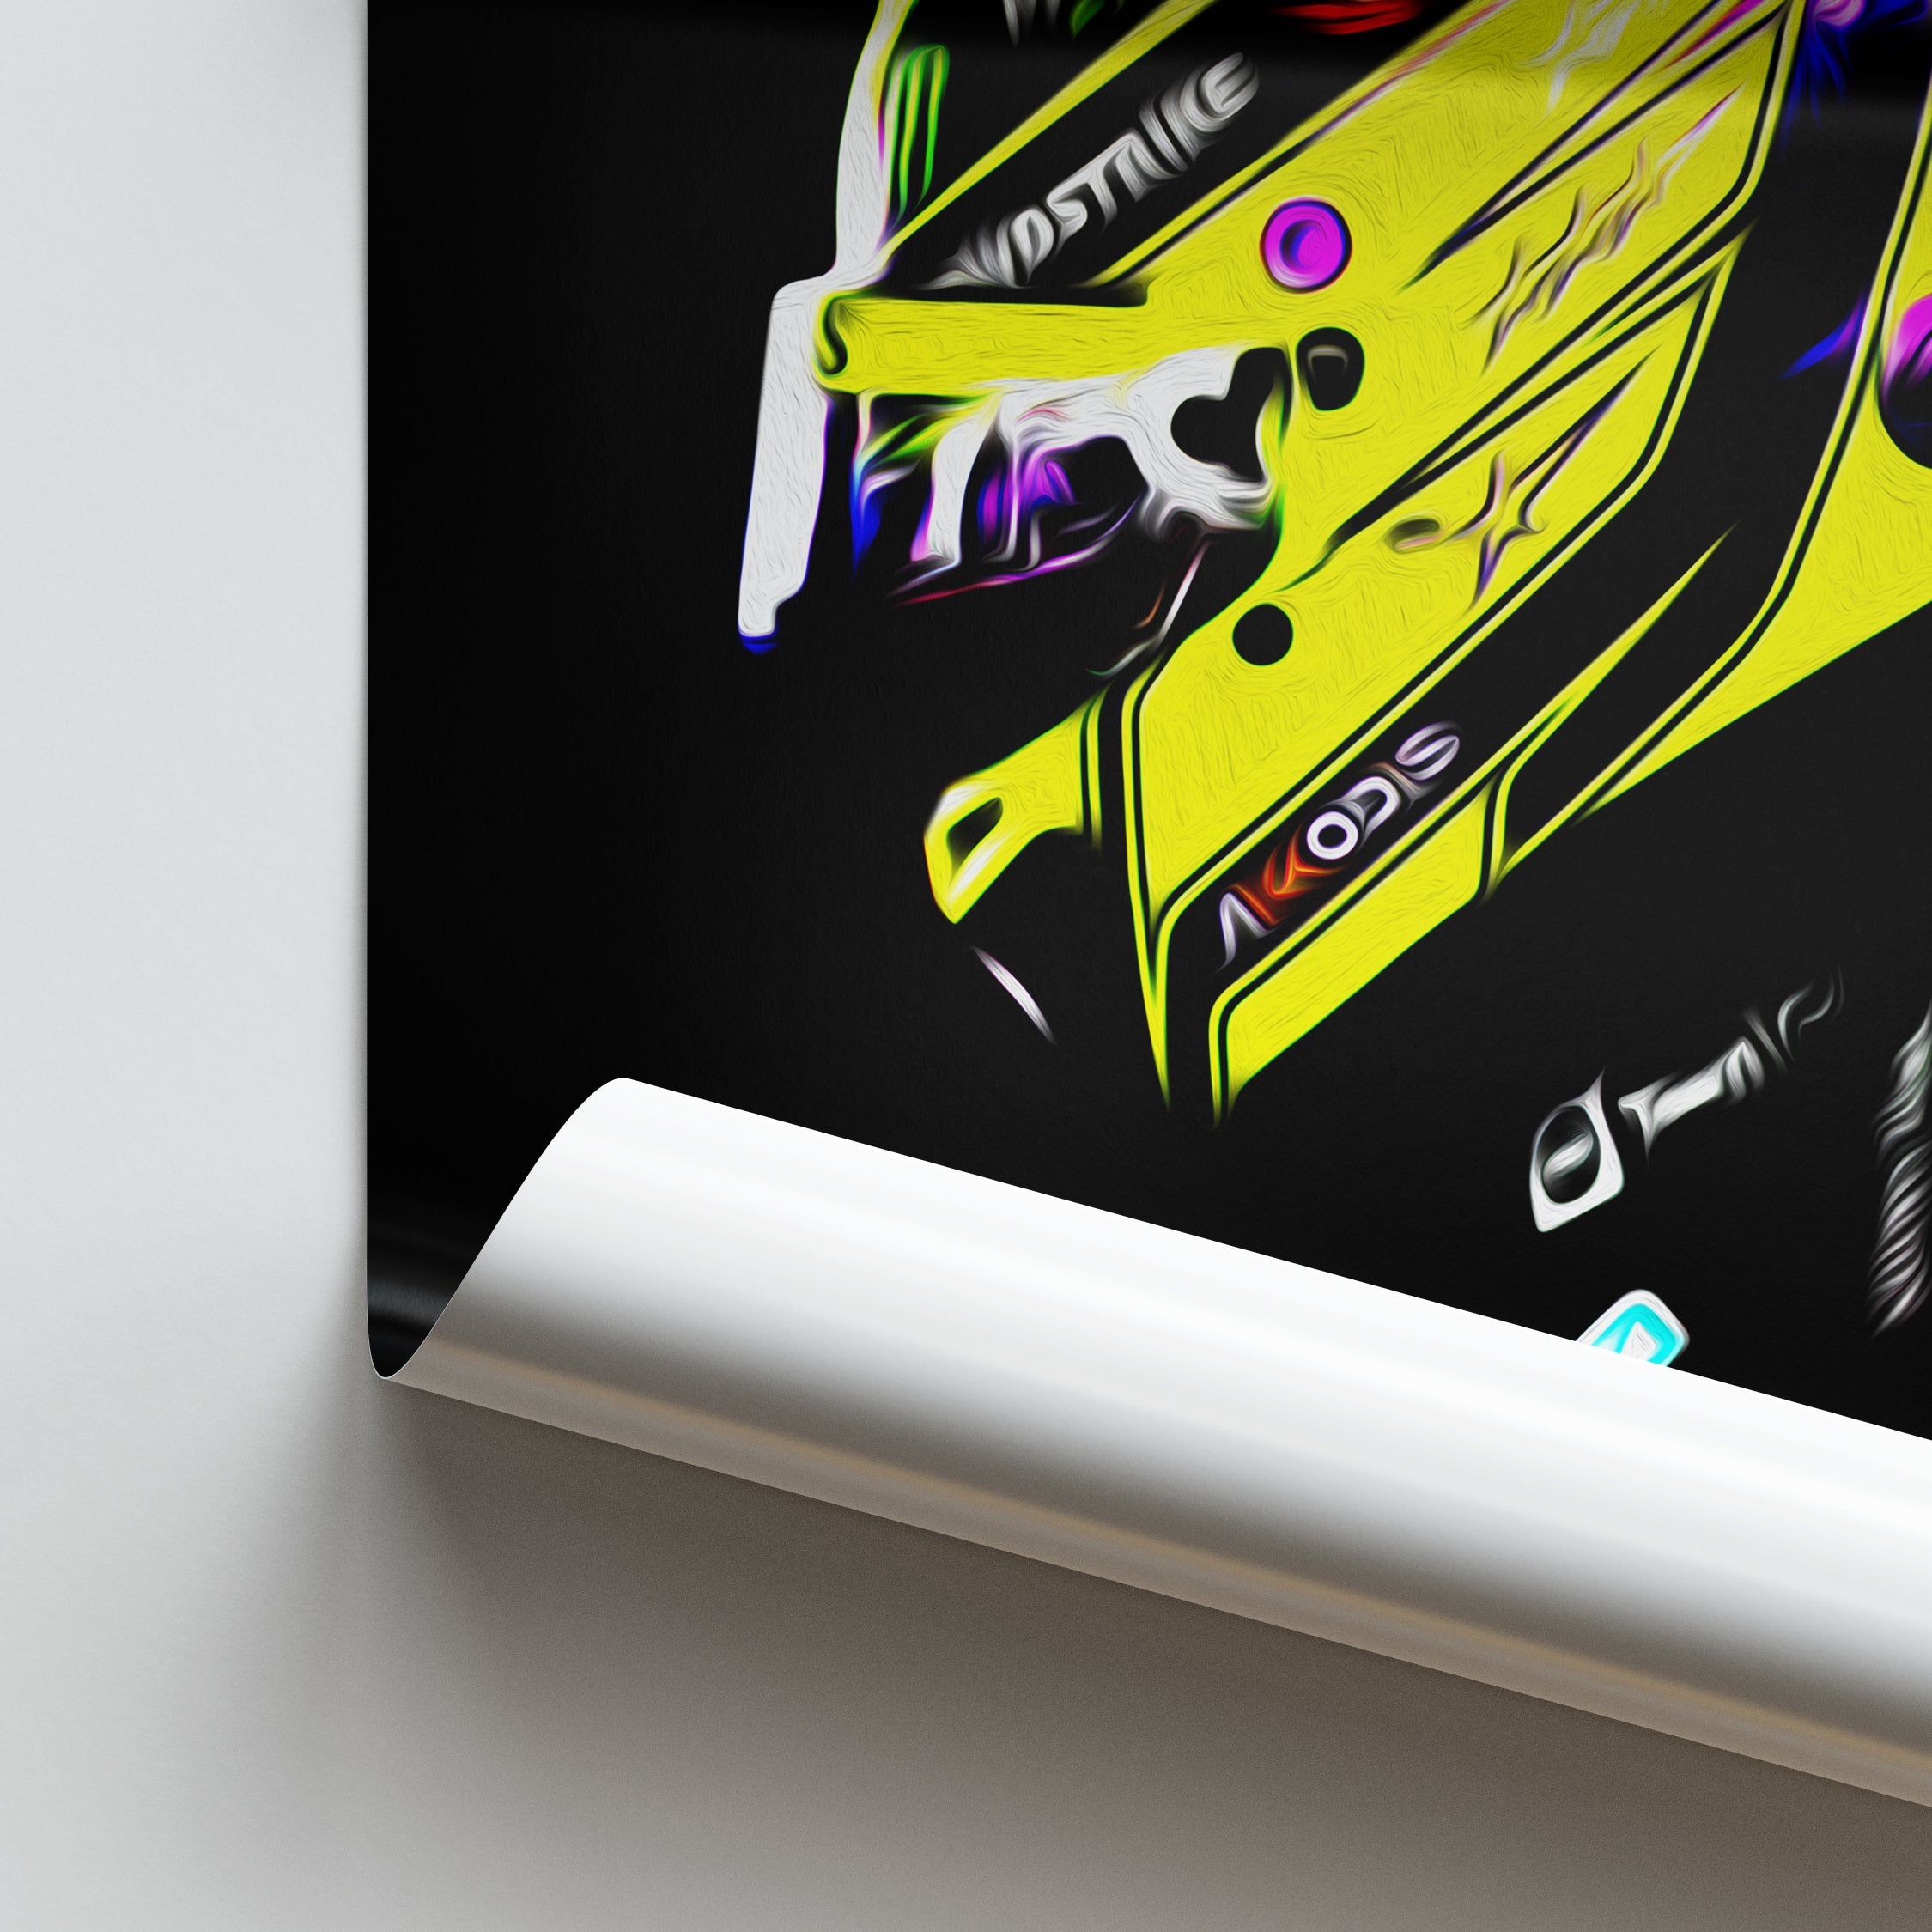 Lewis Hamilton Mercedes 2022 - R. Barbour Art - Impressão FineArt